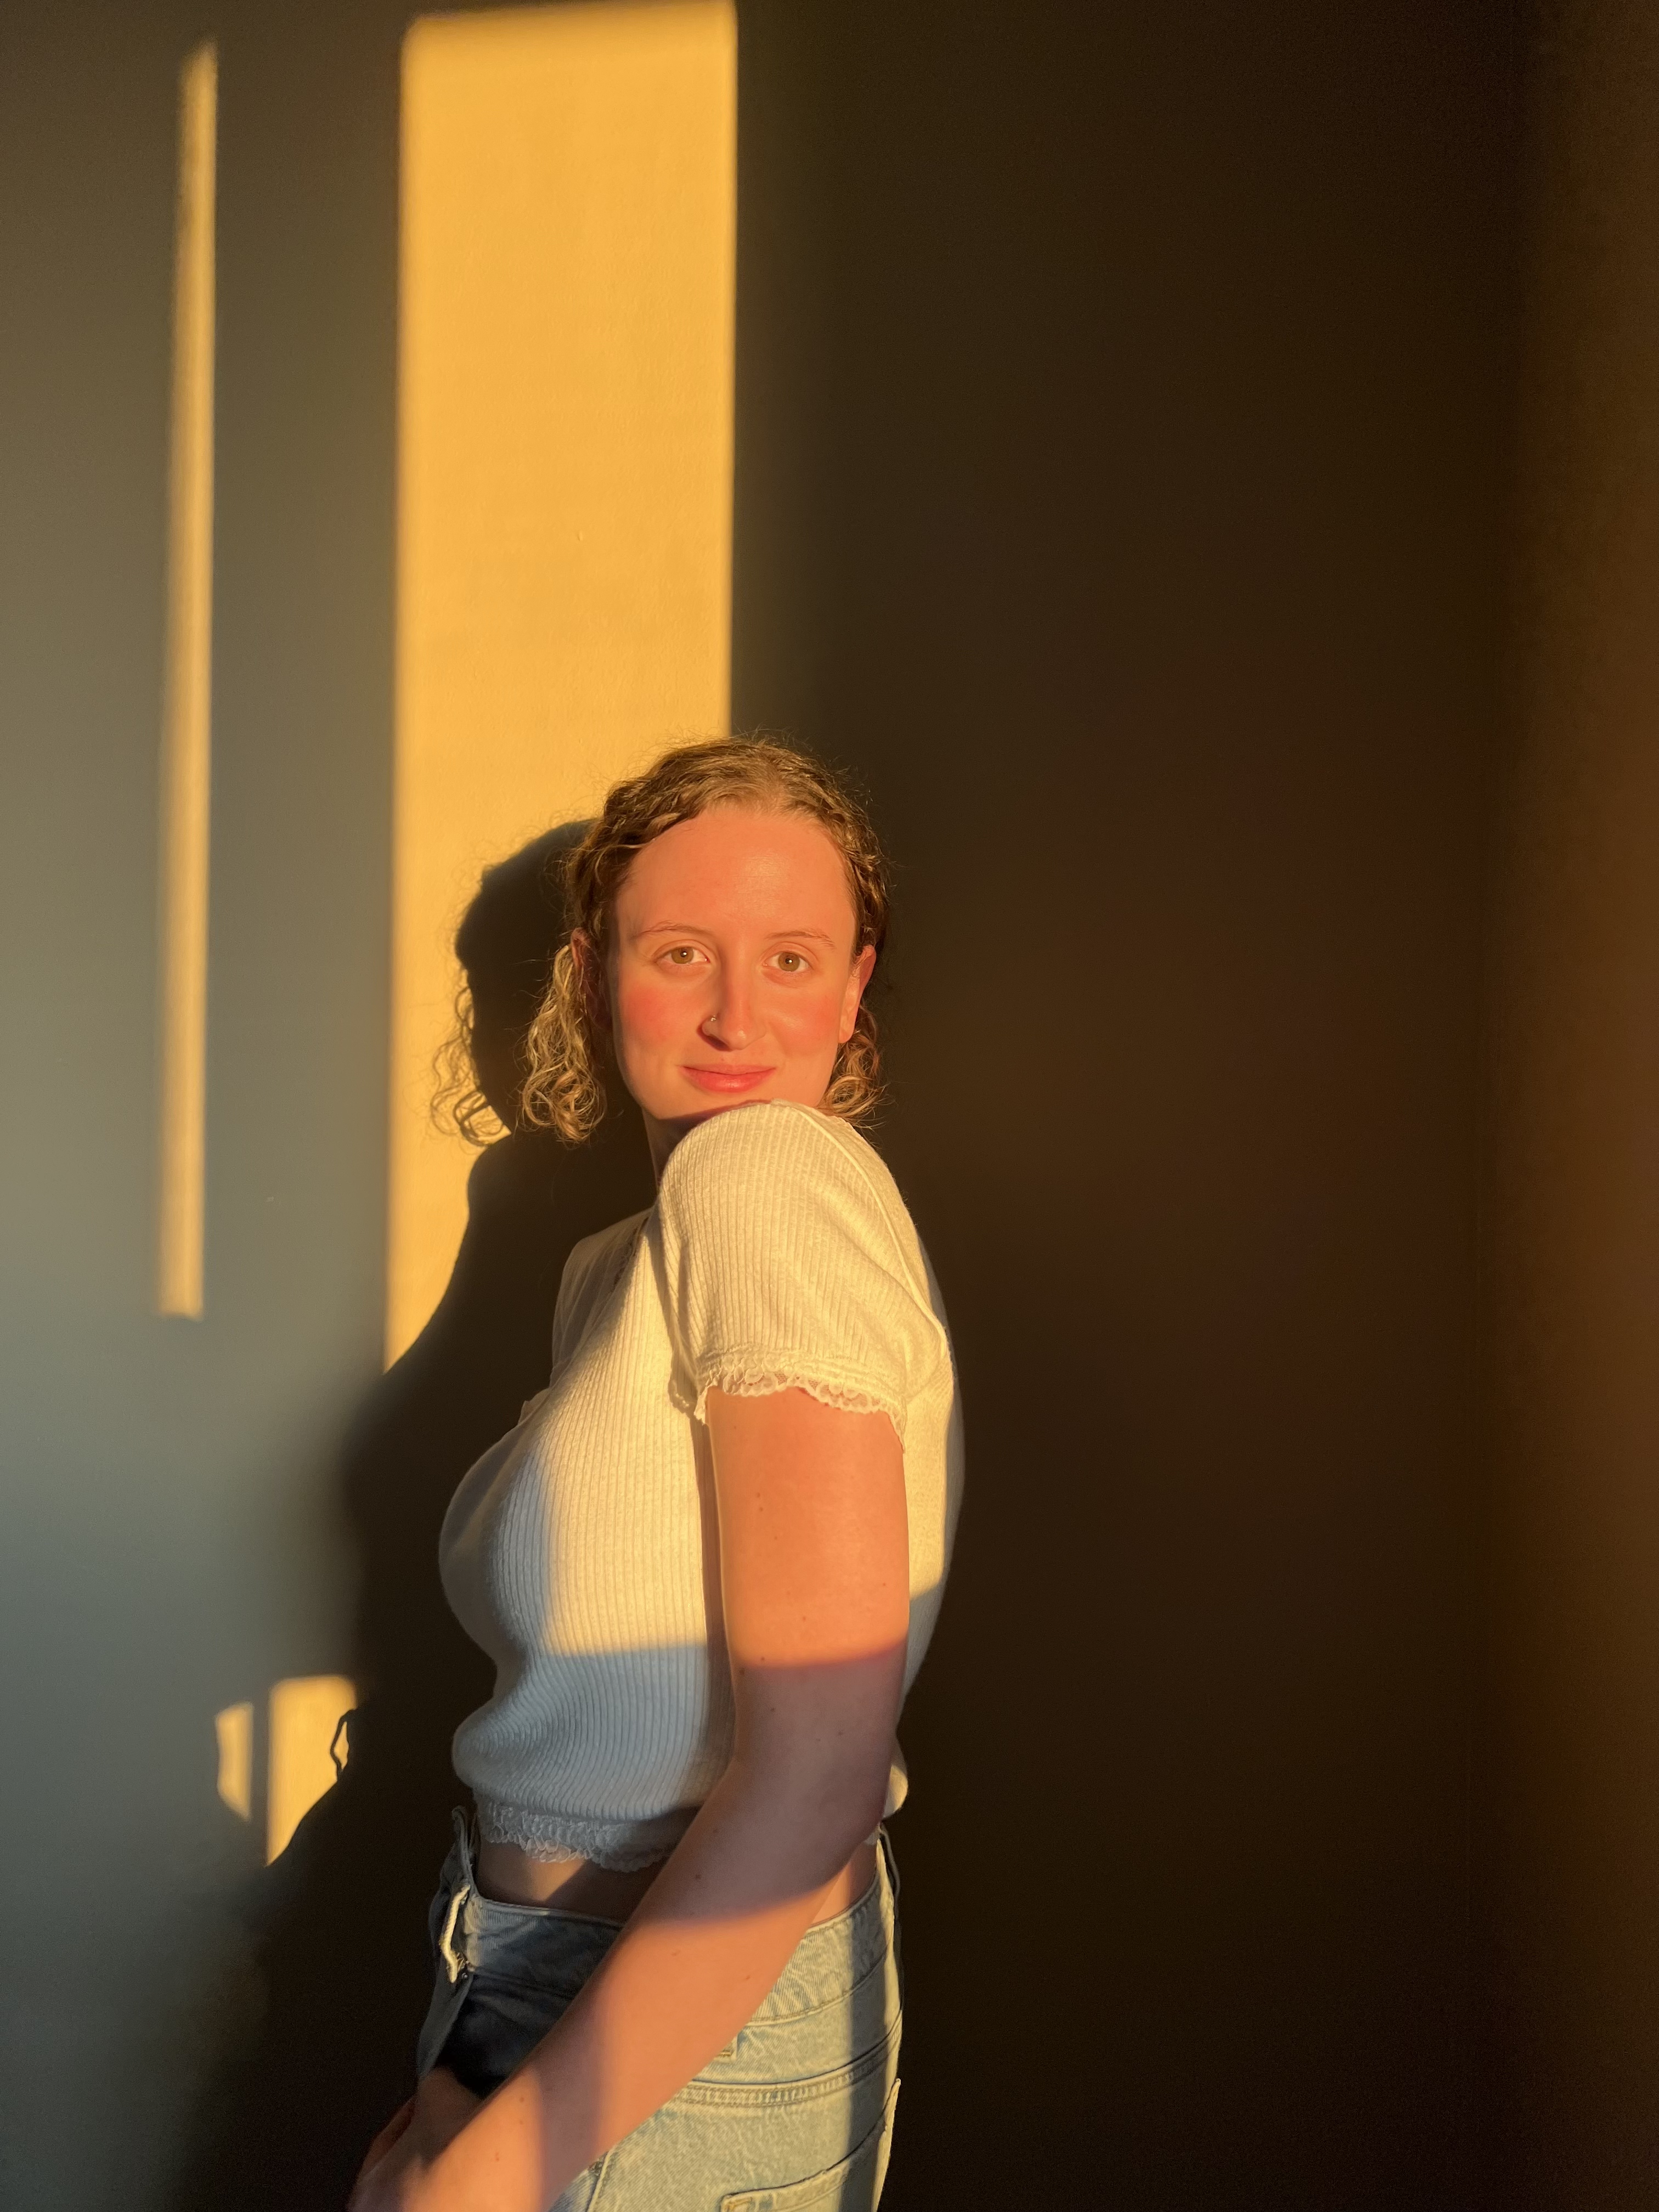 Taylor Gaudon pose en regardant par-dessus son épaule gauche. Le coucher de soleil se reflète sur elle et sur le mur derrière elle.